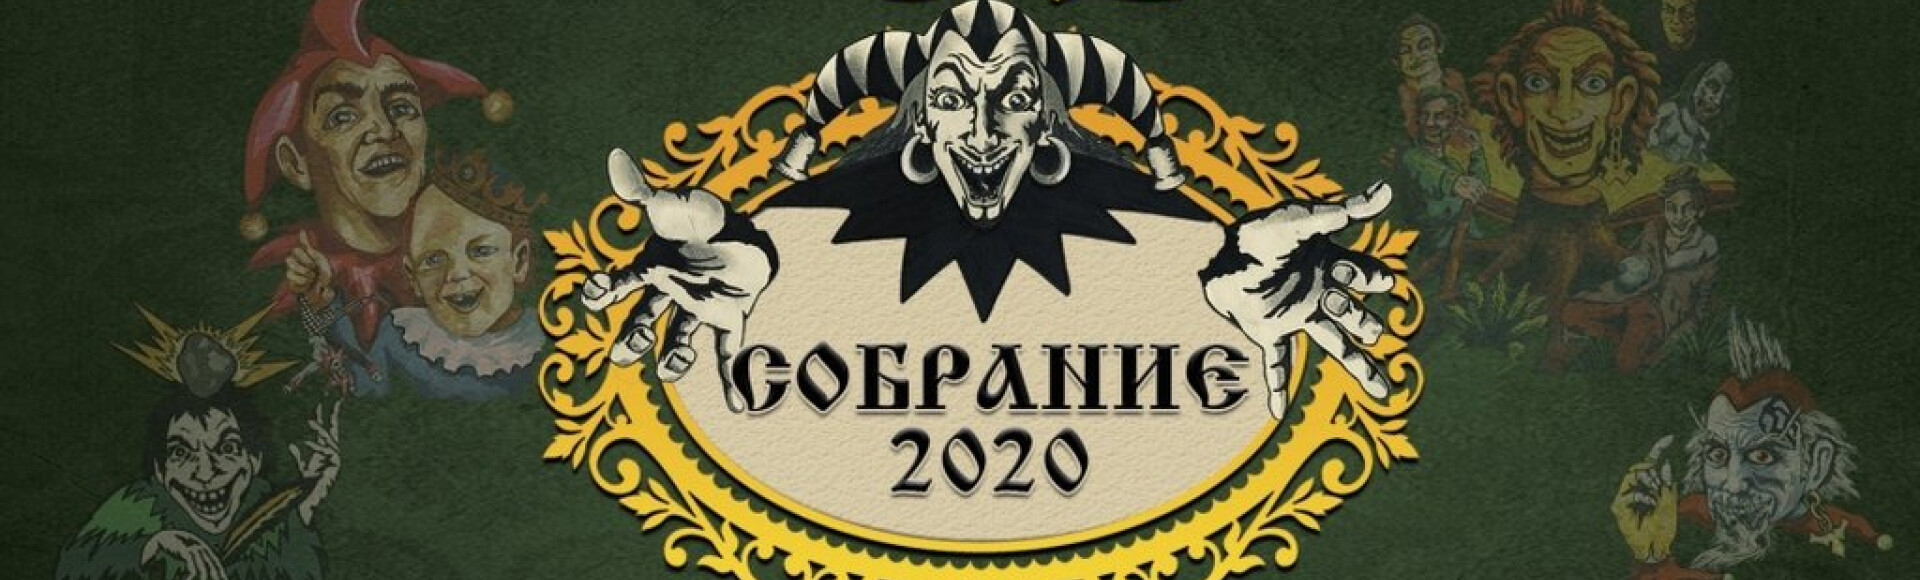 КОРОЛЬ И ШУТ - СОБРАНИЕ 2020 постер